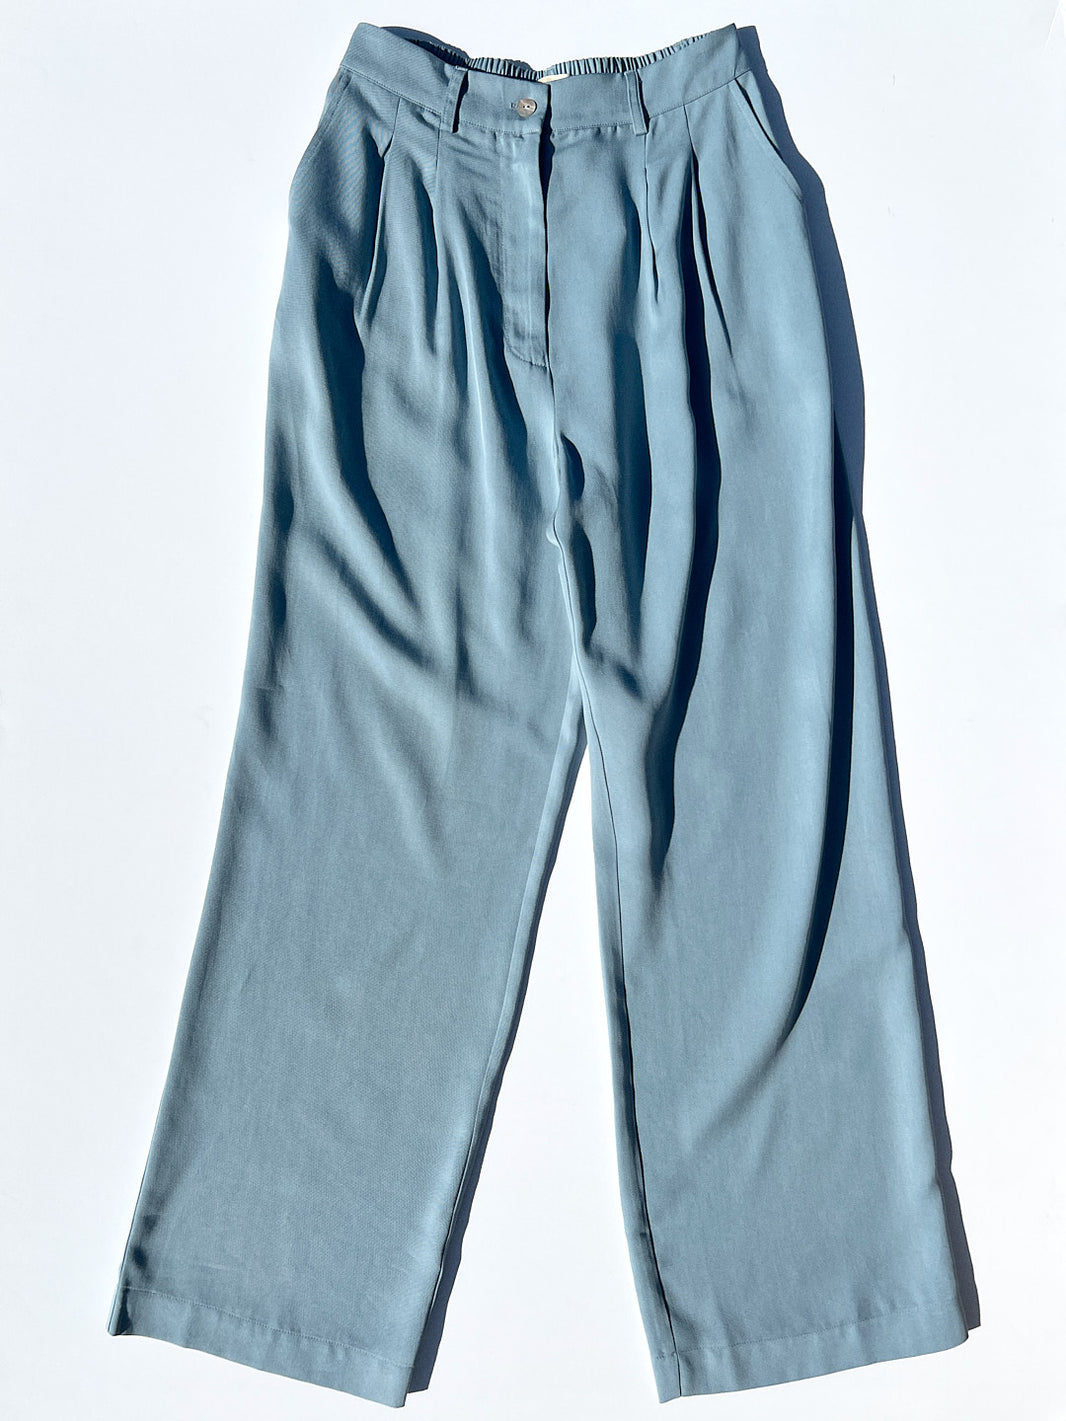 Pants & Denim Jeans at Lisa Says Gah